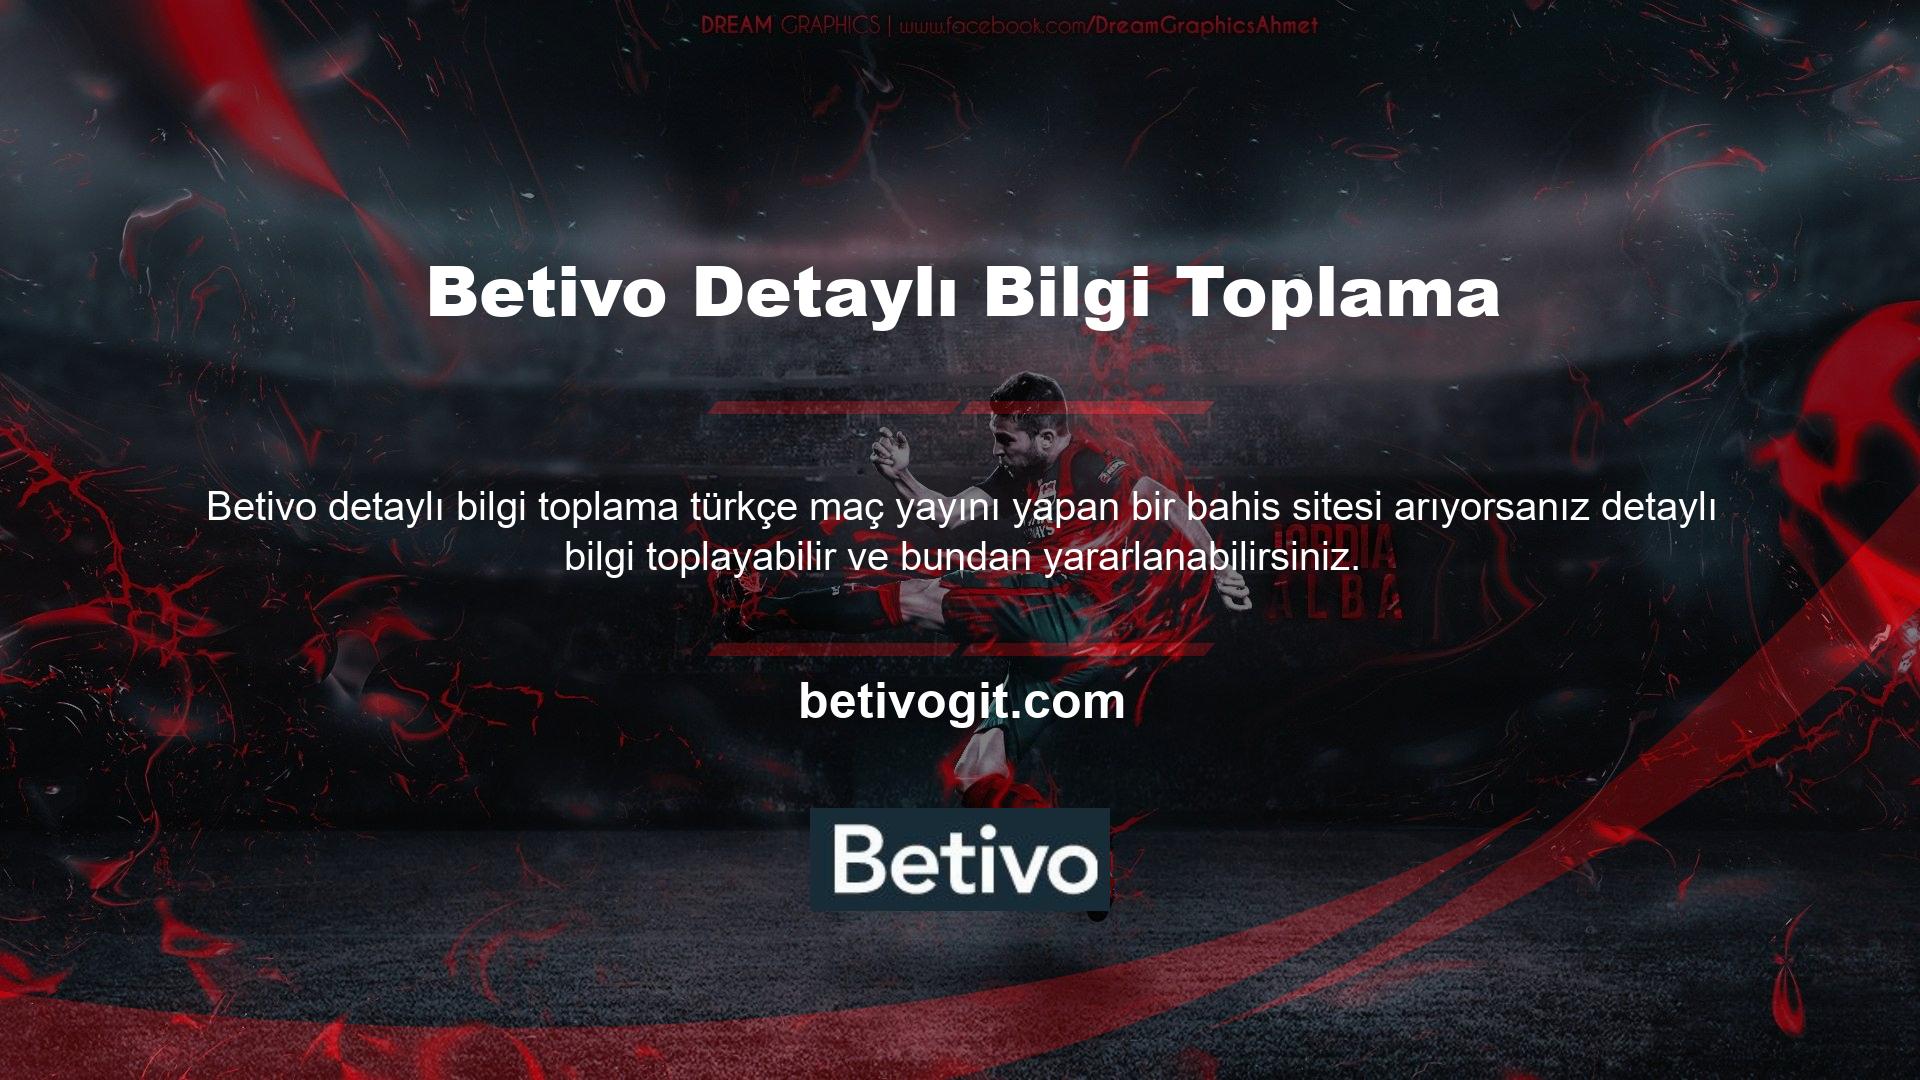 Betivo giriş adresini aratarak canlı TV özelliği hakkında daha fazla bilgi alabilirsiniz